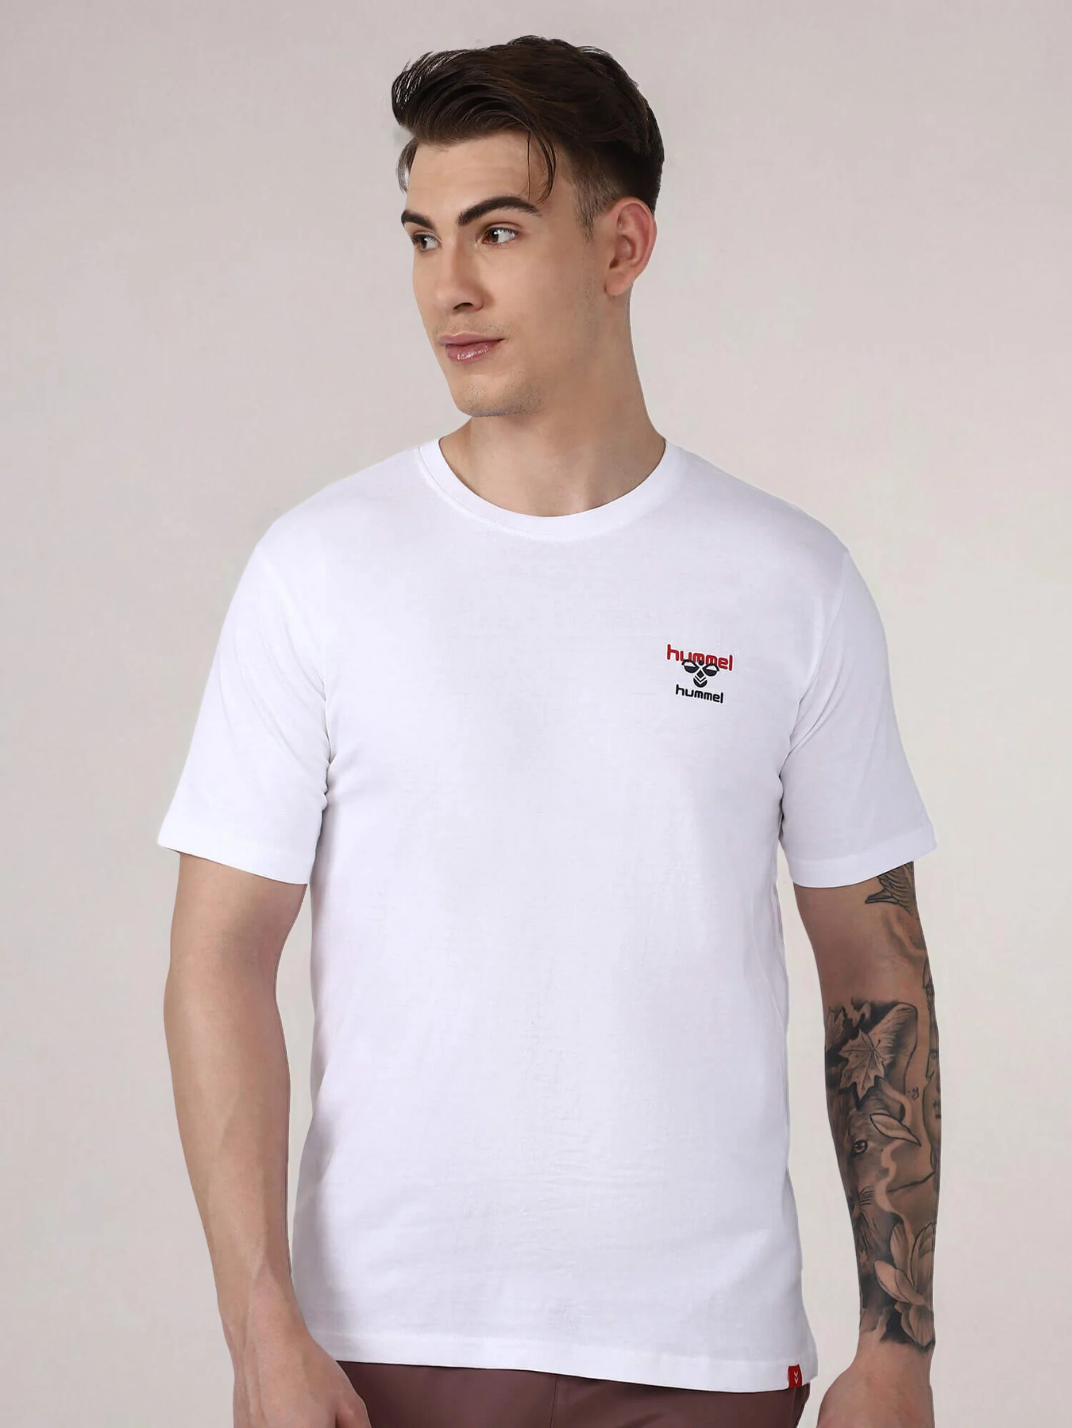 Champ Men's Cotton T-shirt for men in White